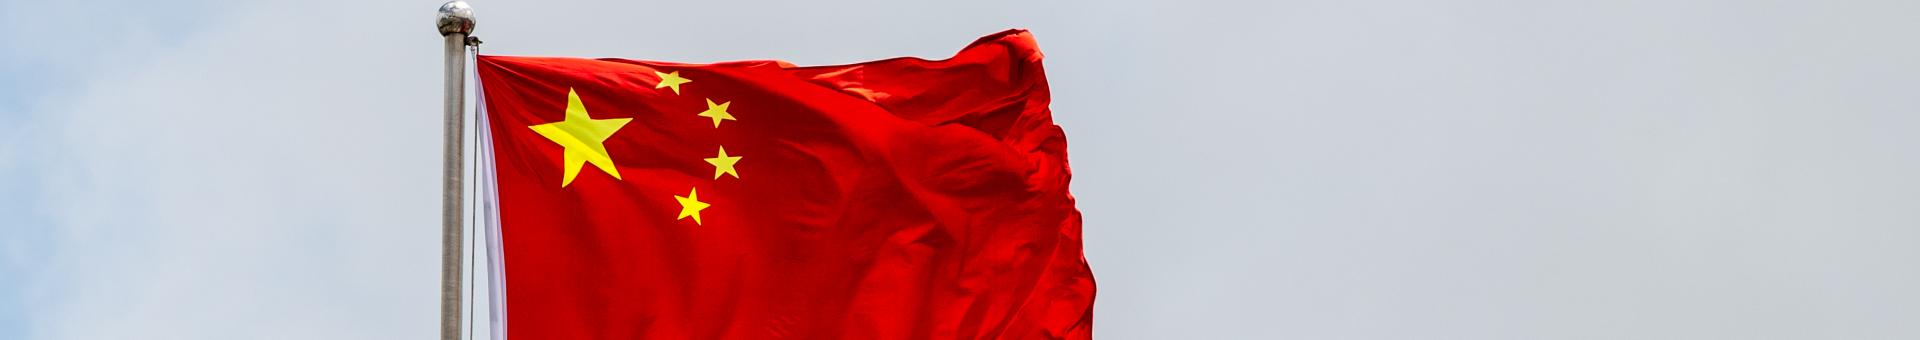 Comment la politique « zéro-Covid » de Xi Jinping réorganise les chaînes de valeur mondiales